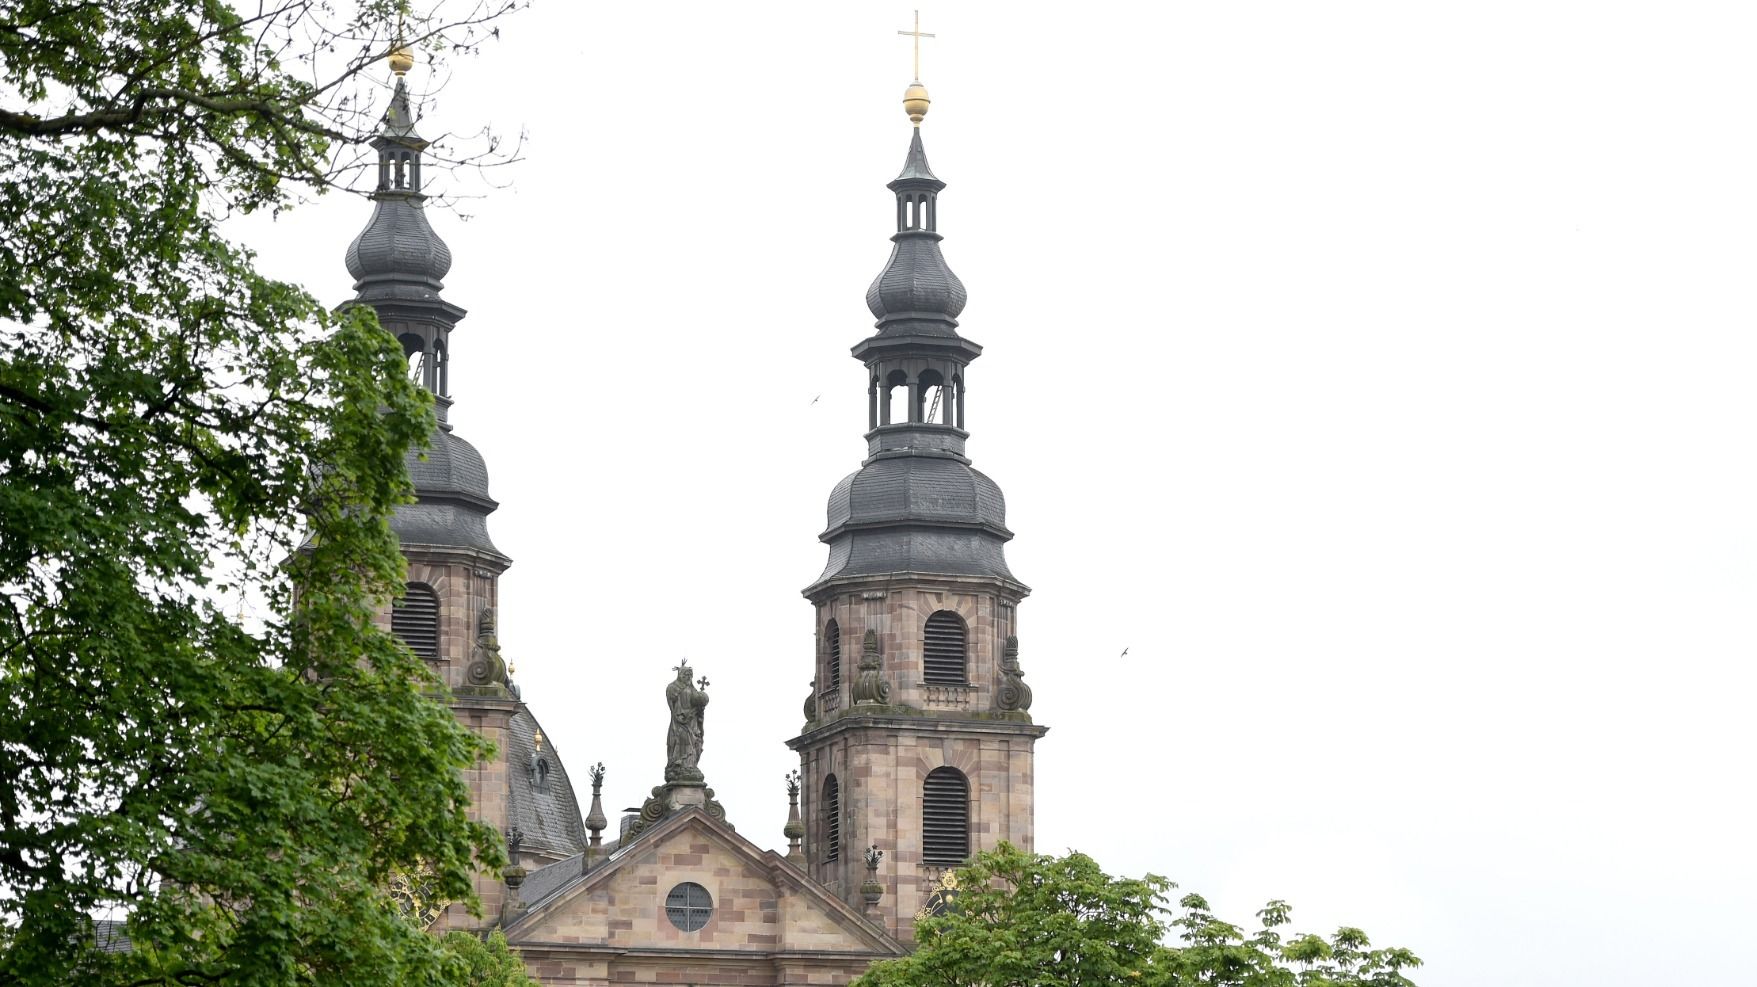 Vier neue Diakone für das Bistum Fulda - Feierliche Weihe am 8. Juni. Foto: Bistum Fulda / M. Seidel